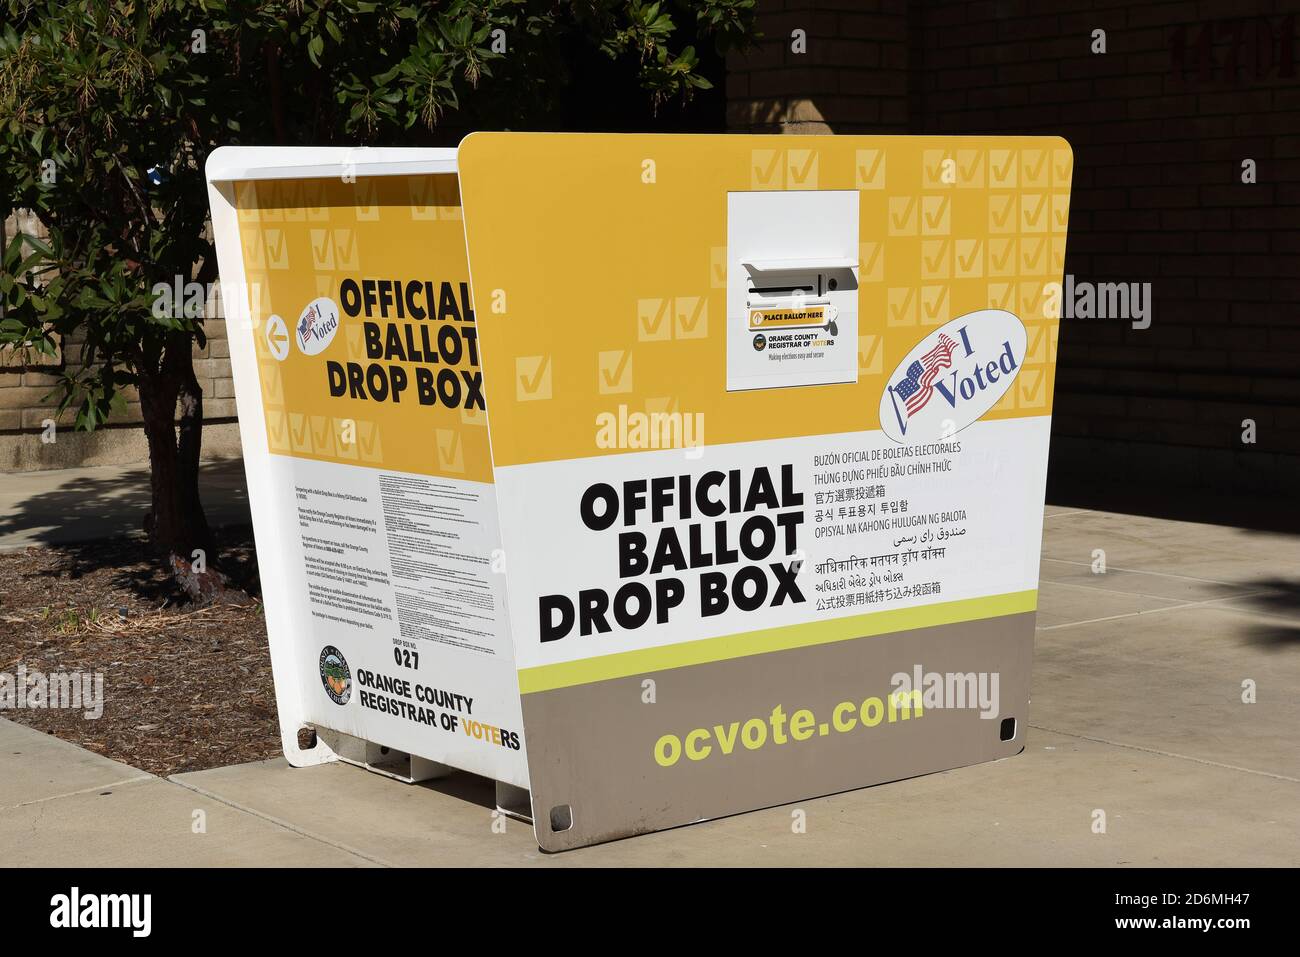 IRVINE, CALIFORNIA - 14 OTT 2020: Una scatola ufficiale di consegna a Harvard Park, Irvine, Orange County, California. Foto Stock